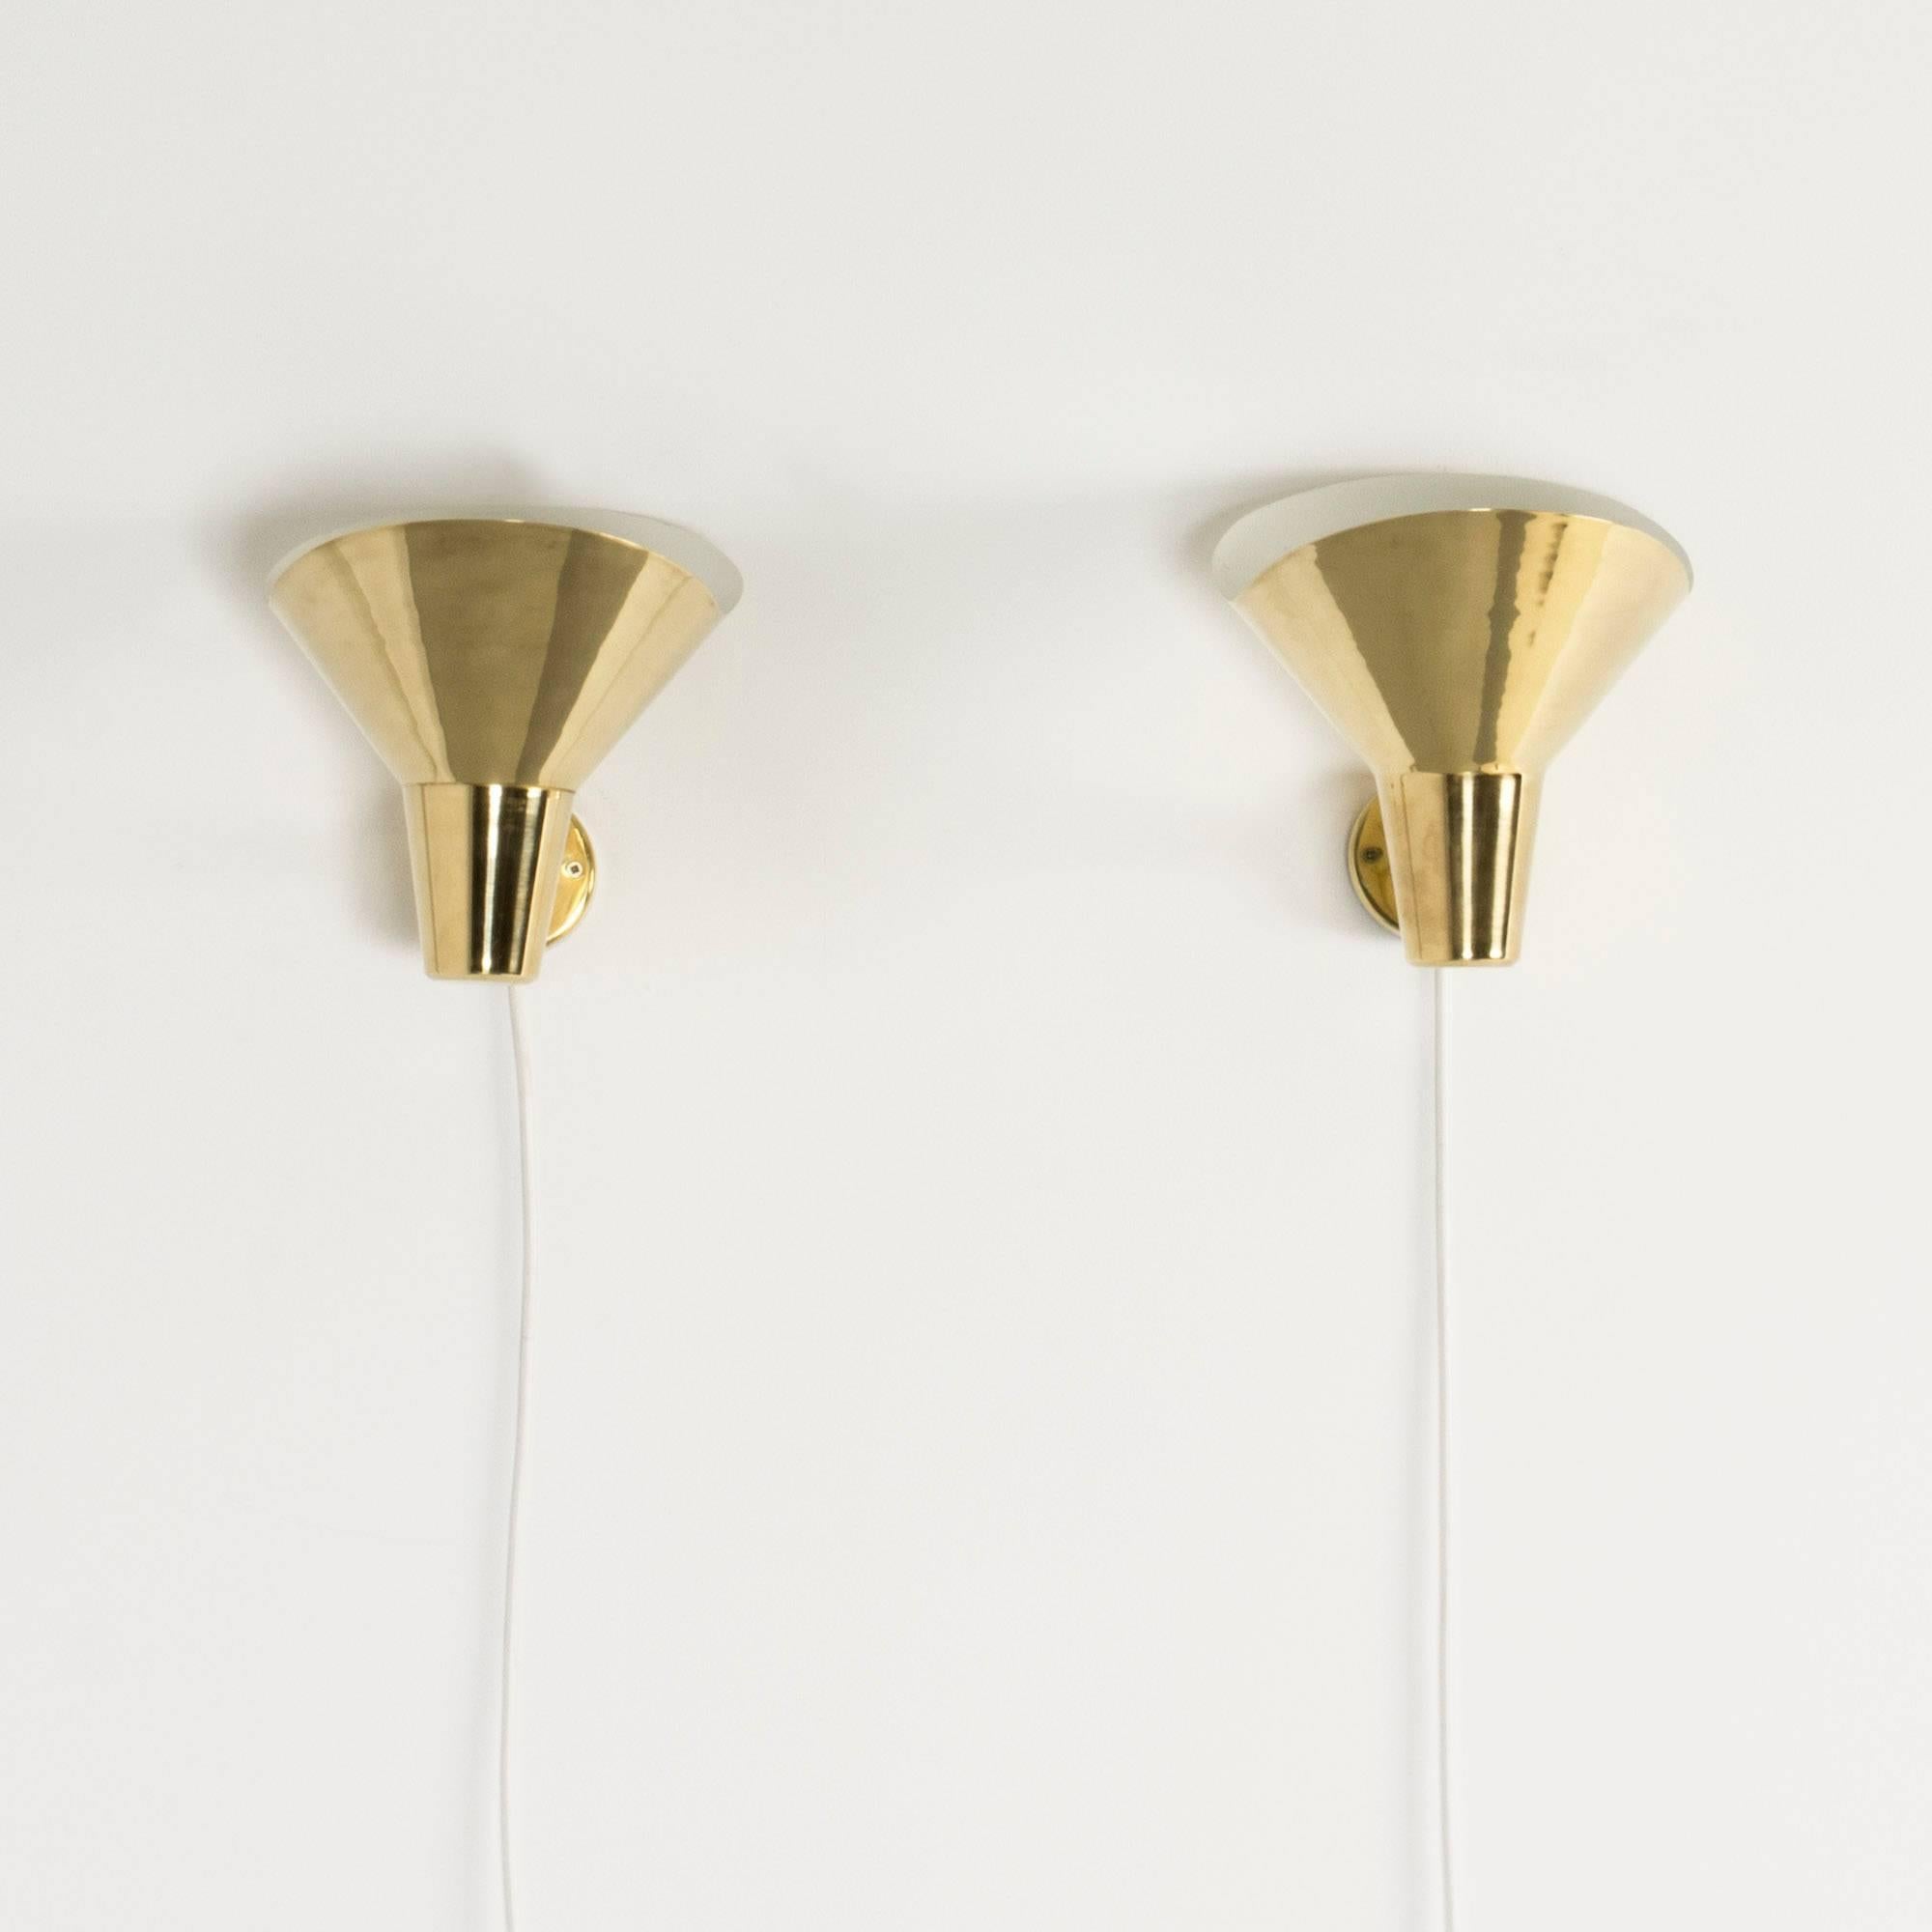 Scandinavian Modern Pair of Brass Wall Sconces by Hans Bergström